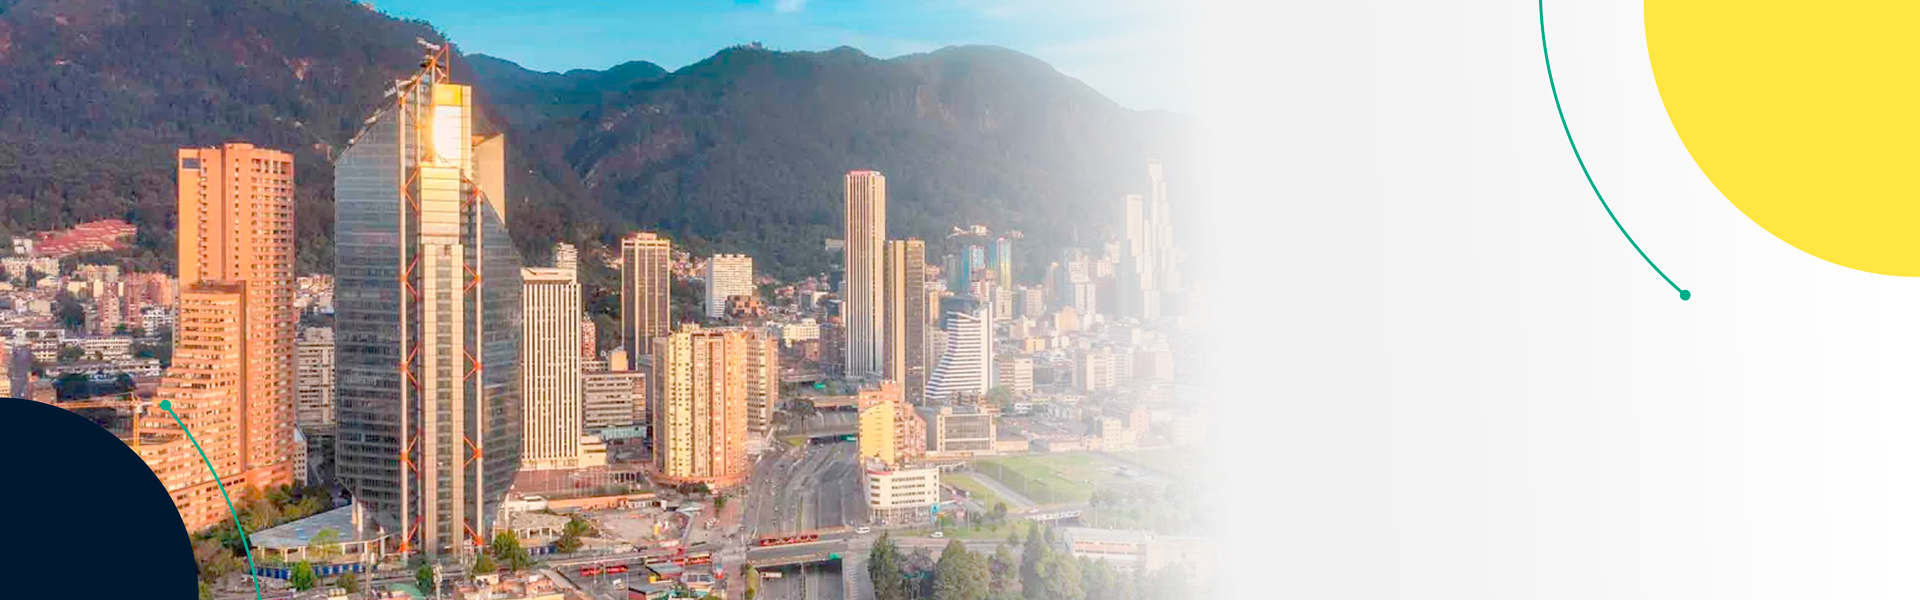 Empresas requieren personal para empezar a trabajar en Bogotá